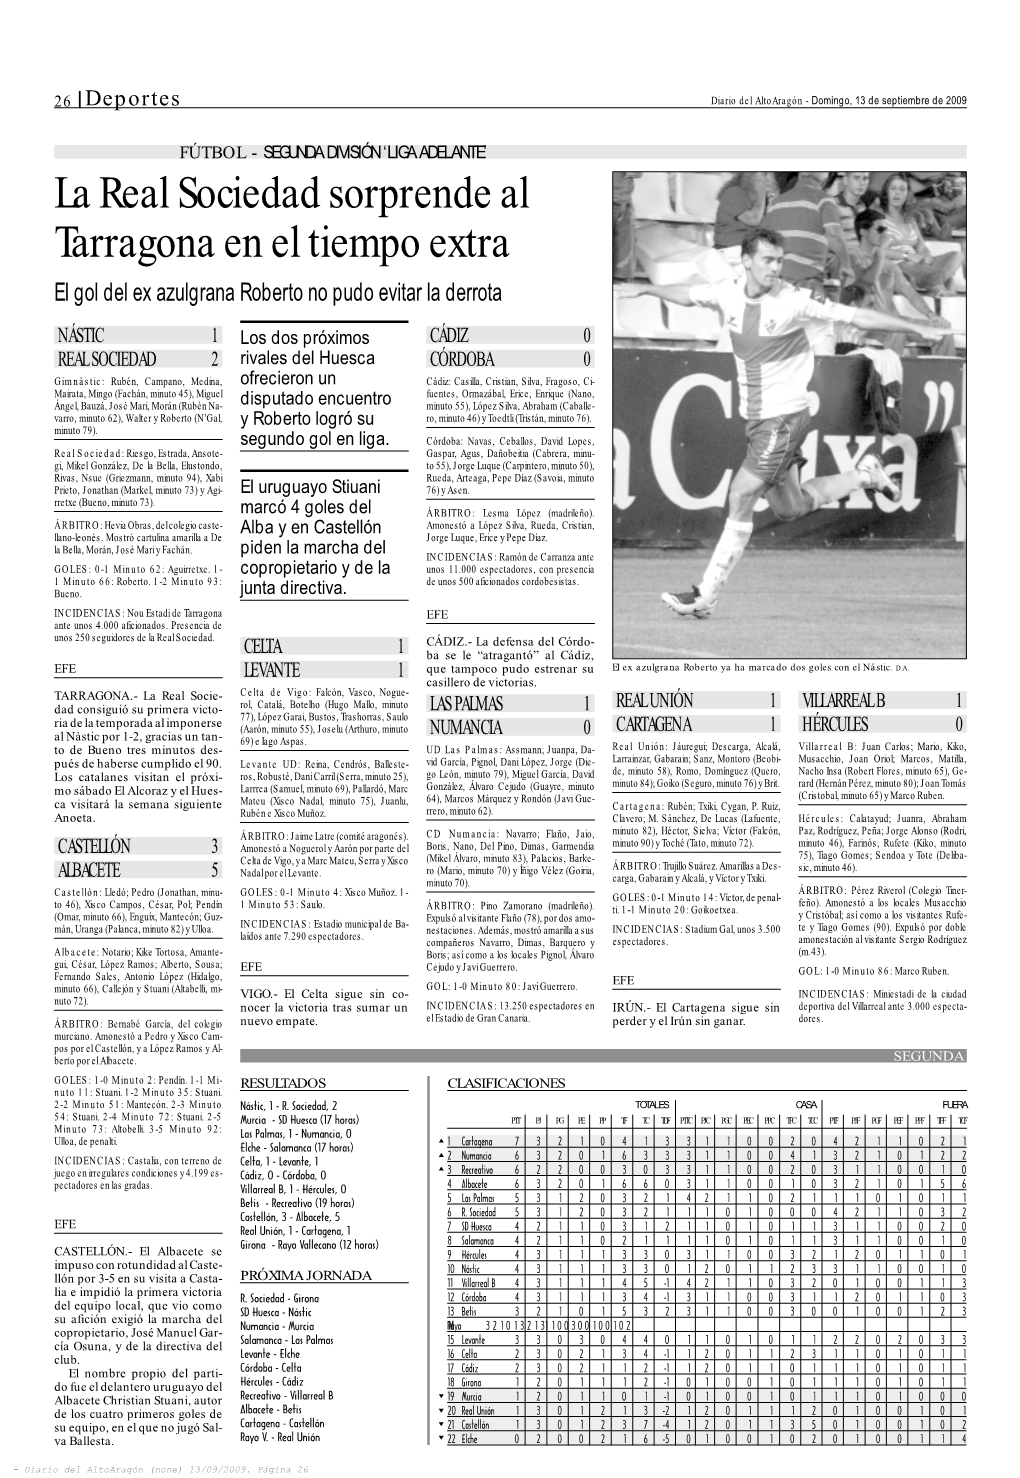 La Real Sociedad Sorprende Al Tarragona En El Tiempo Extra El Gol Del Ex Azulgrana Roberto No Pudo Evitar La Derrota